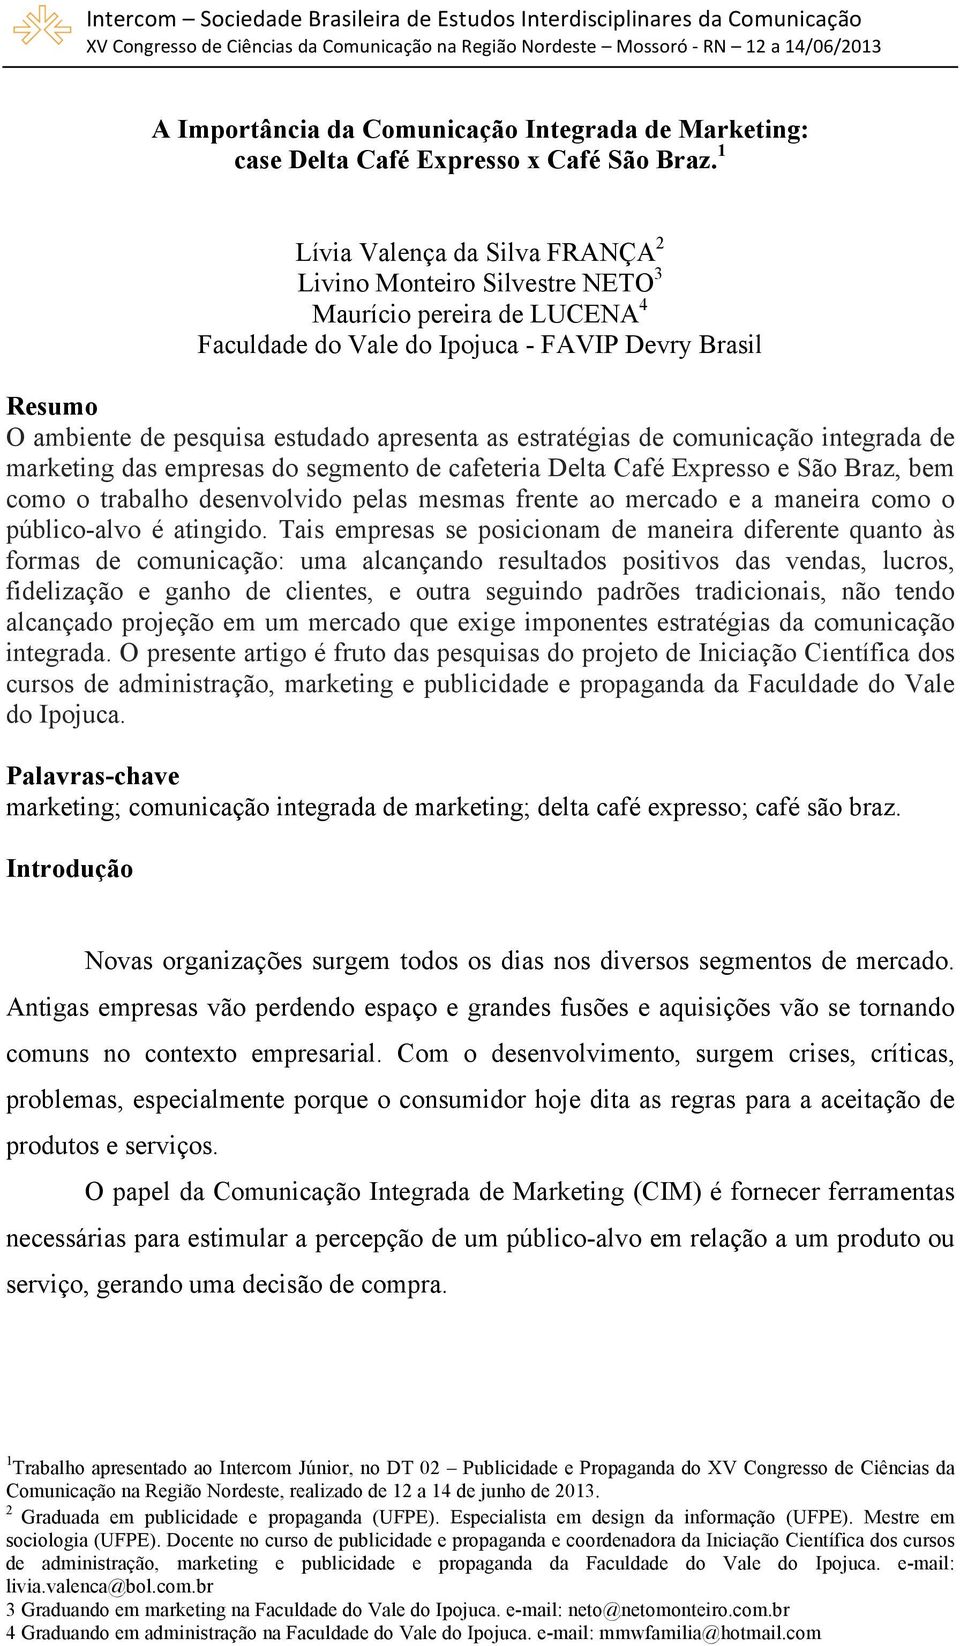 estratégias de comunicação integrada de marketing das empresas do segmento de cafeteria Delta Café Expresso e São Braz, bem como o trabalho desenvolvido pelas mesmas frente ao mercado e a maneira